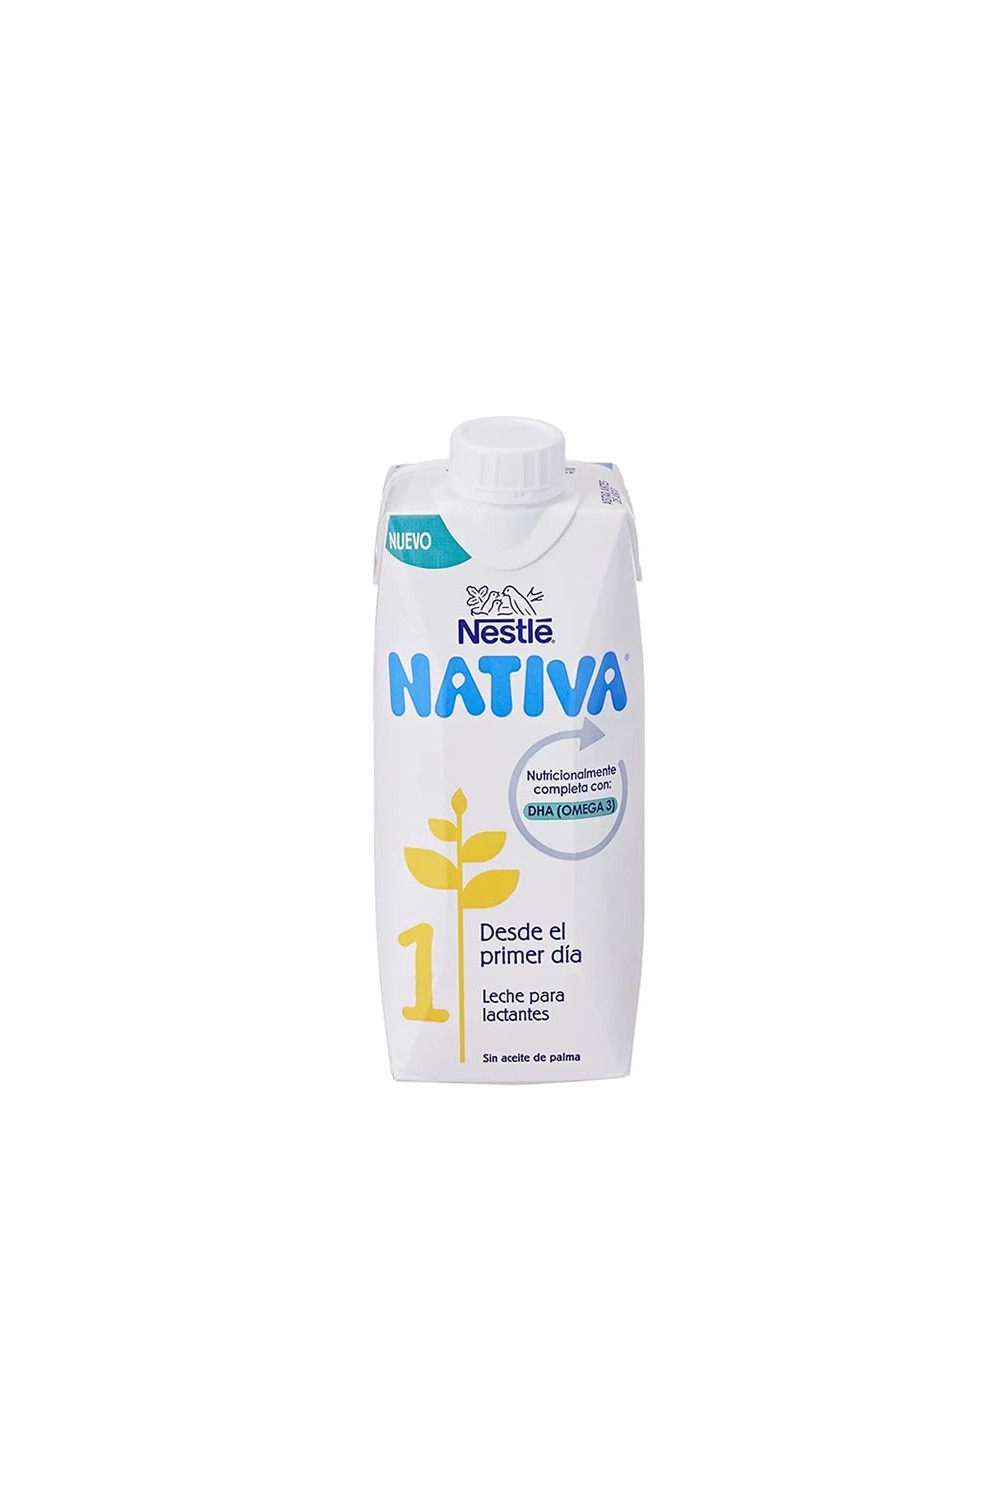 NIDINA - Nestle Nativa 1 Premium Liquid Milk 500ml